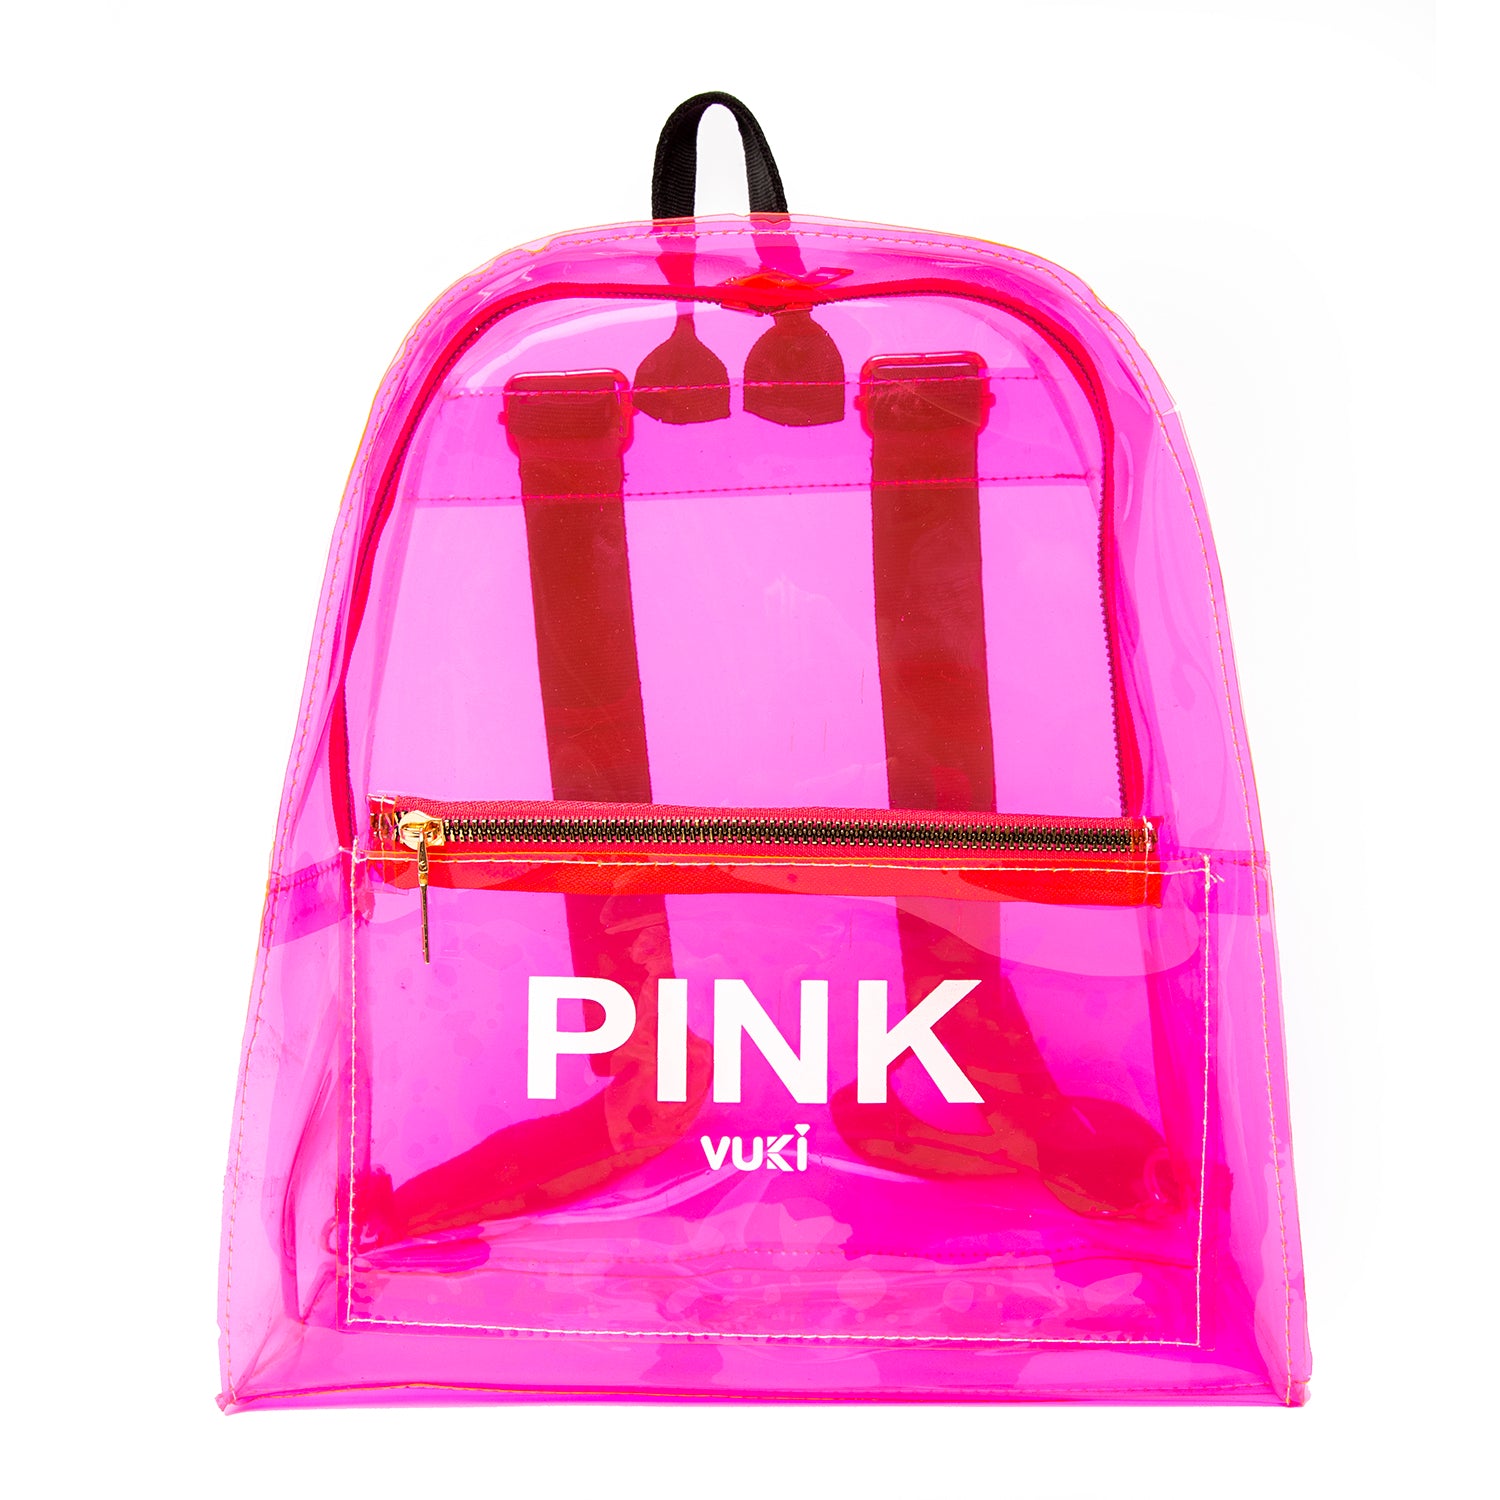 Clear Barbie Pink Vinyl Shoulder Bag Purse | eBay